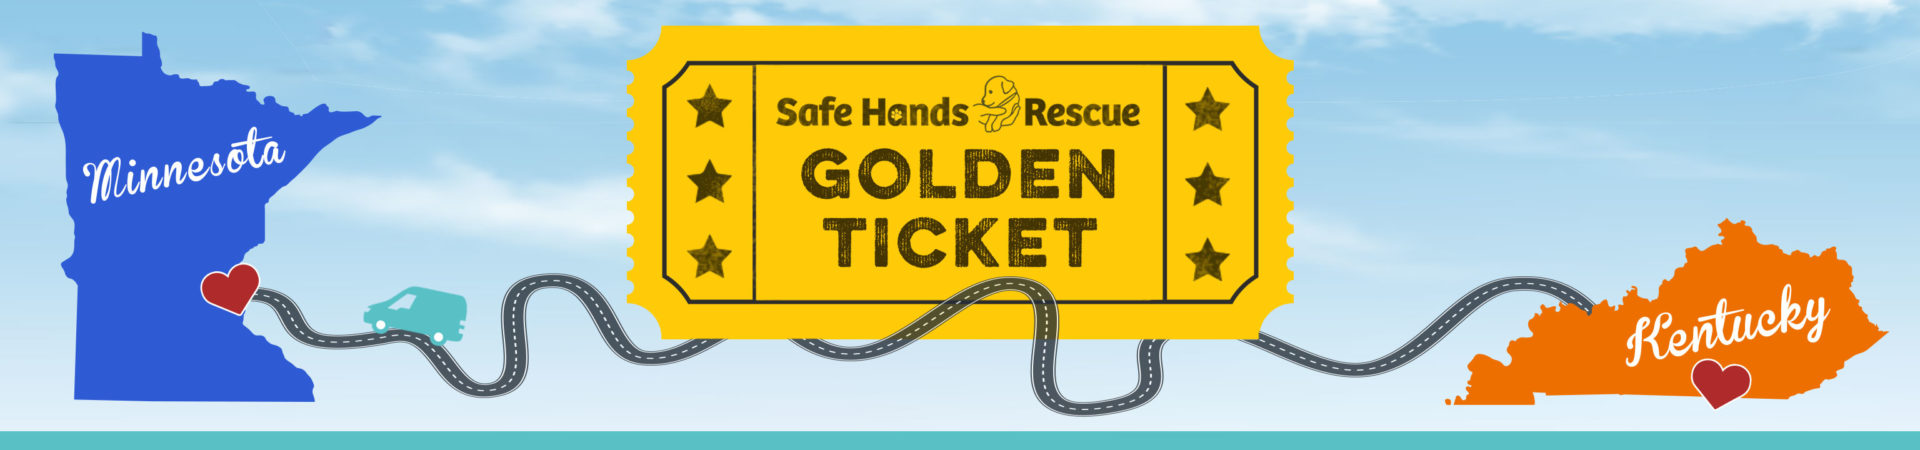 GoldenTicket+SafeHands-Banner-FINAL copy